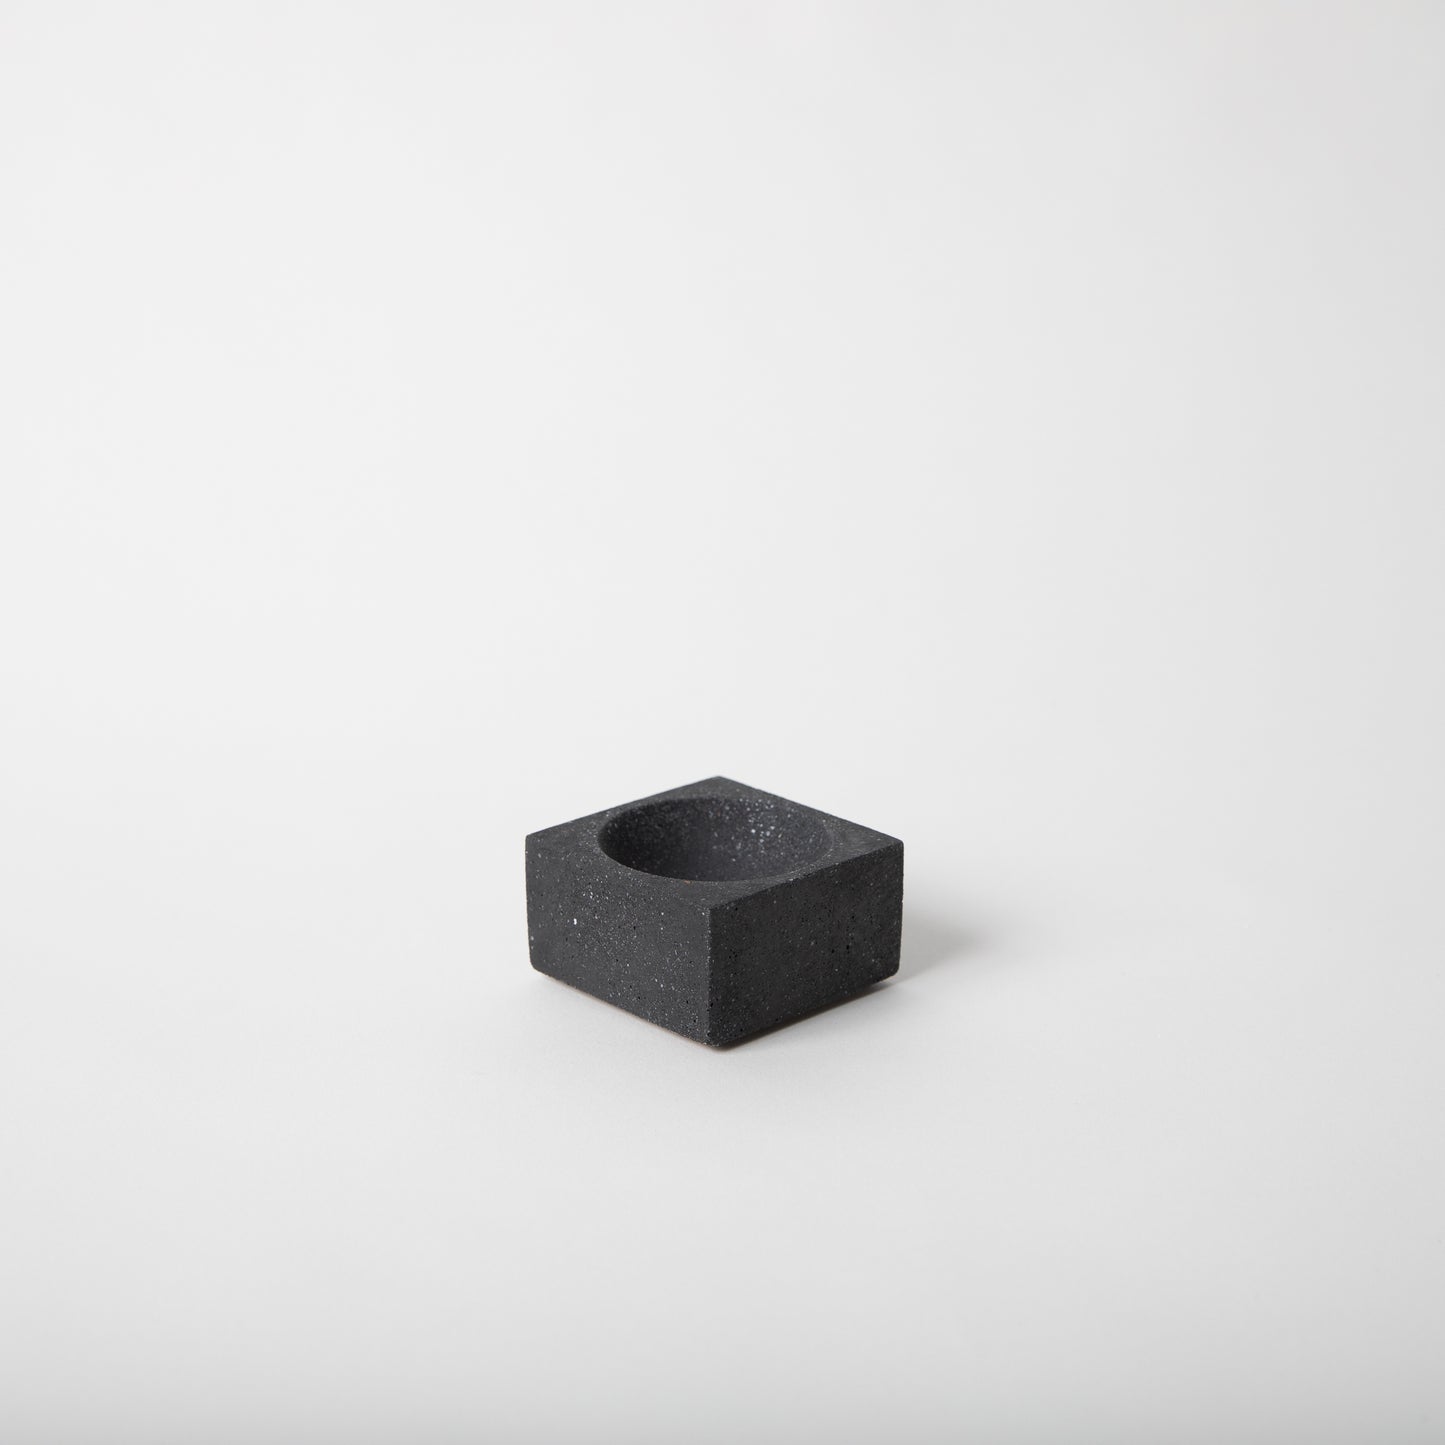 Square concrete terrazzo incense holder in black.